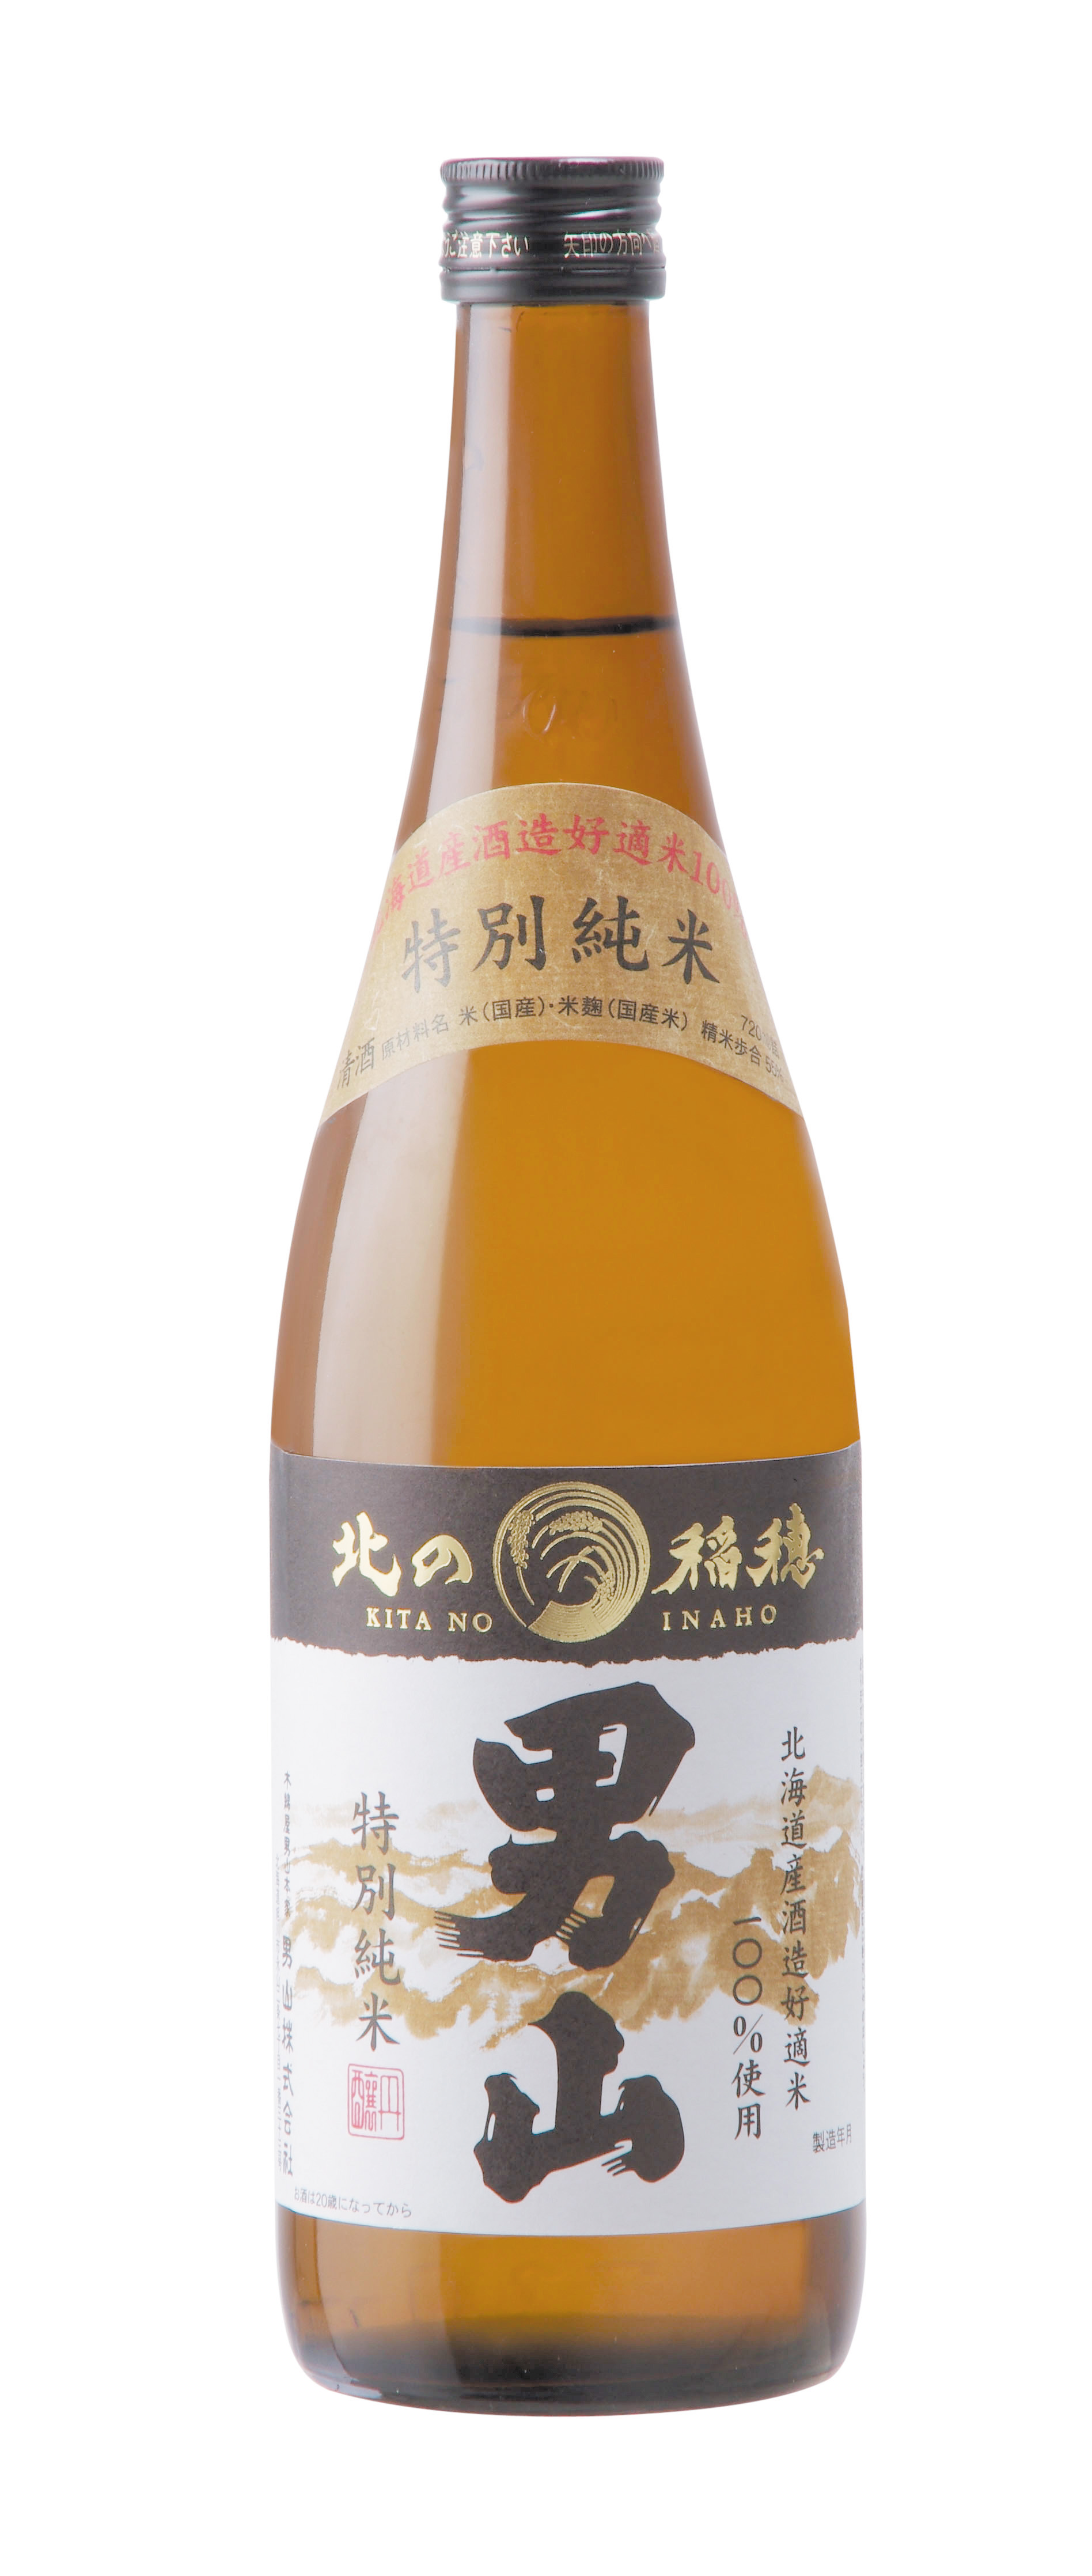 男山酒造 特別純米 北の稲穂 720ml - セイコーマート公式通販